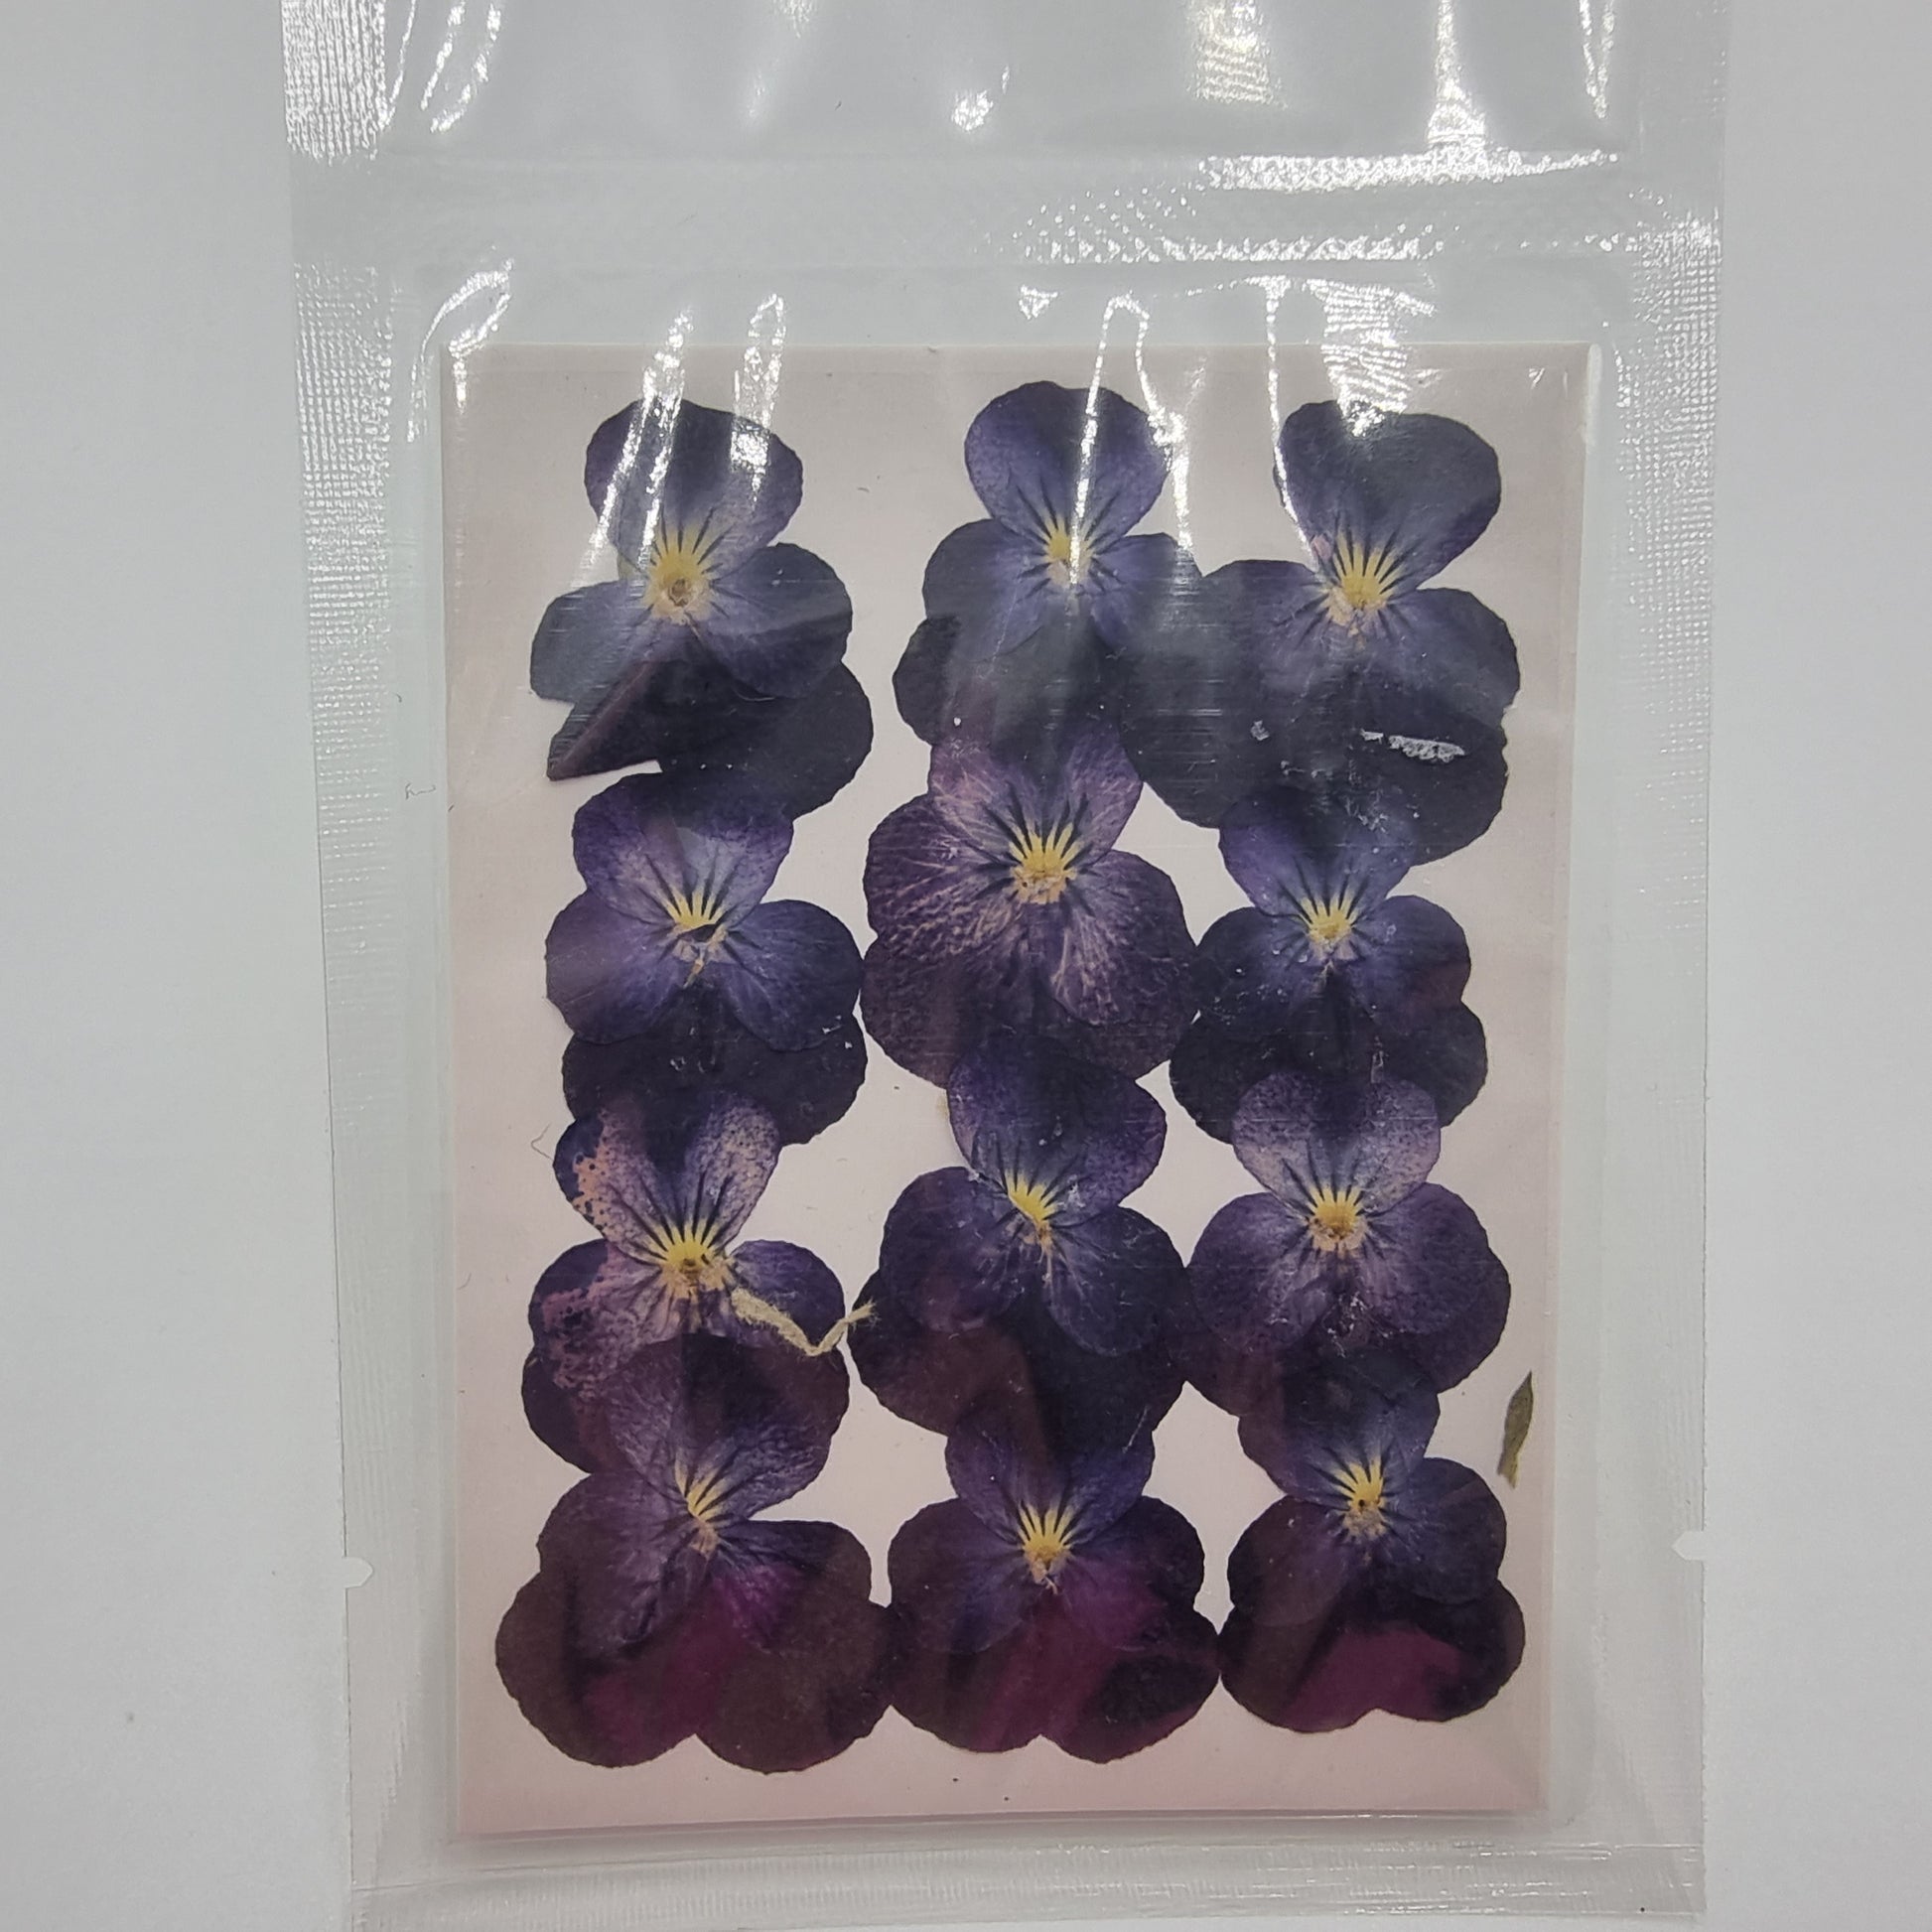 Dried Pressed Flowers - Dark Purple Small - Mystic Art Glitters